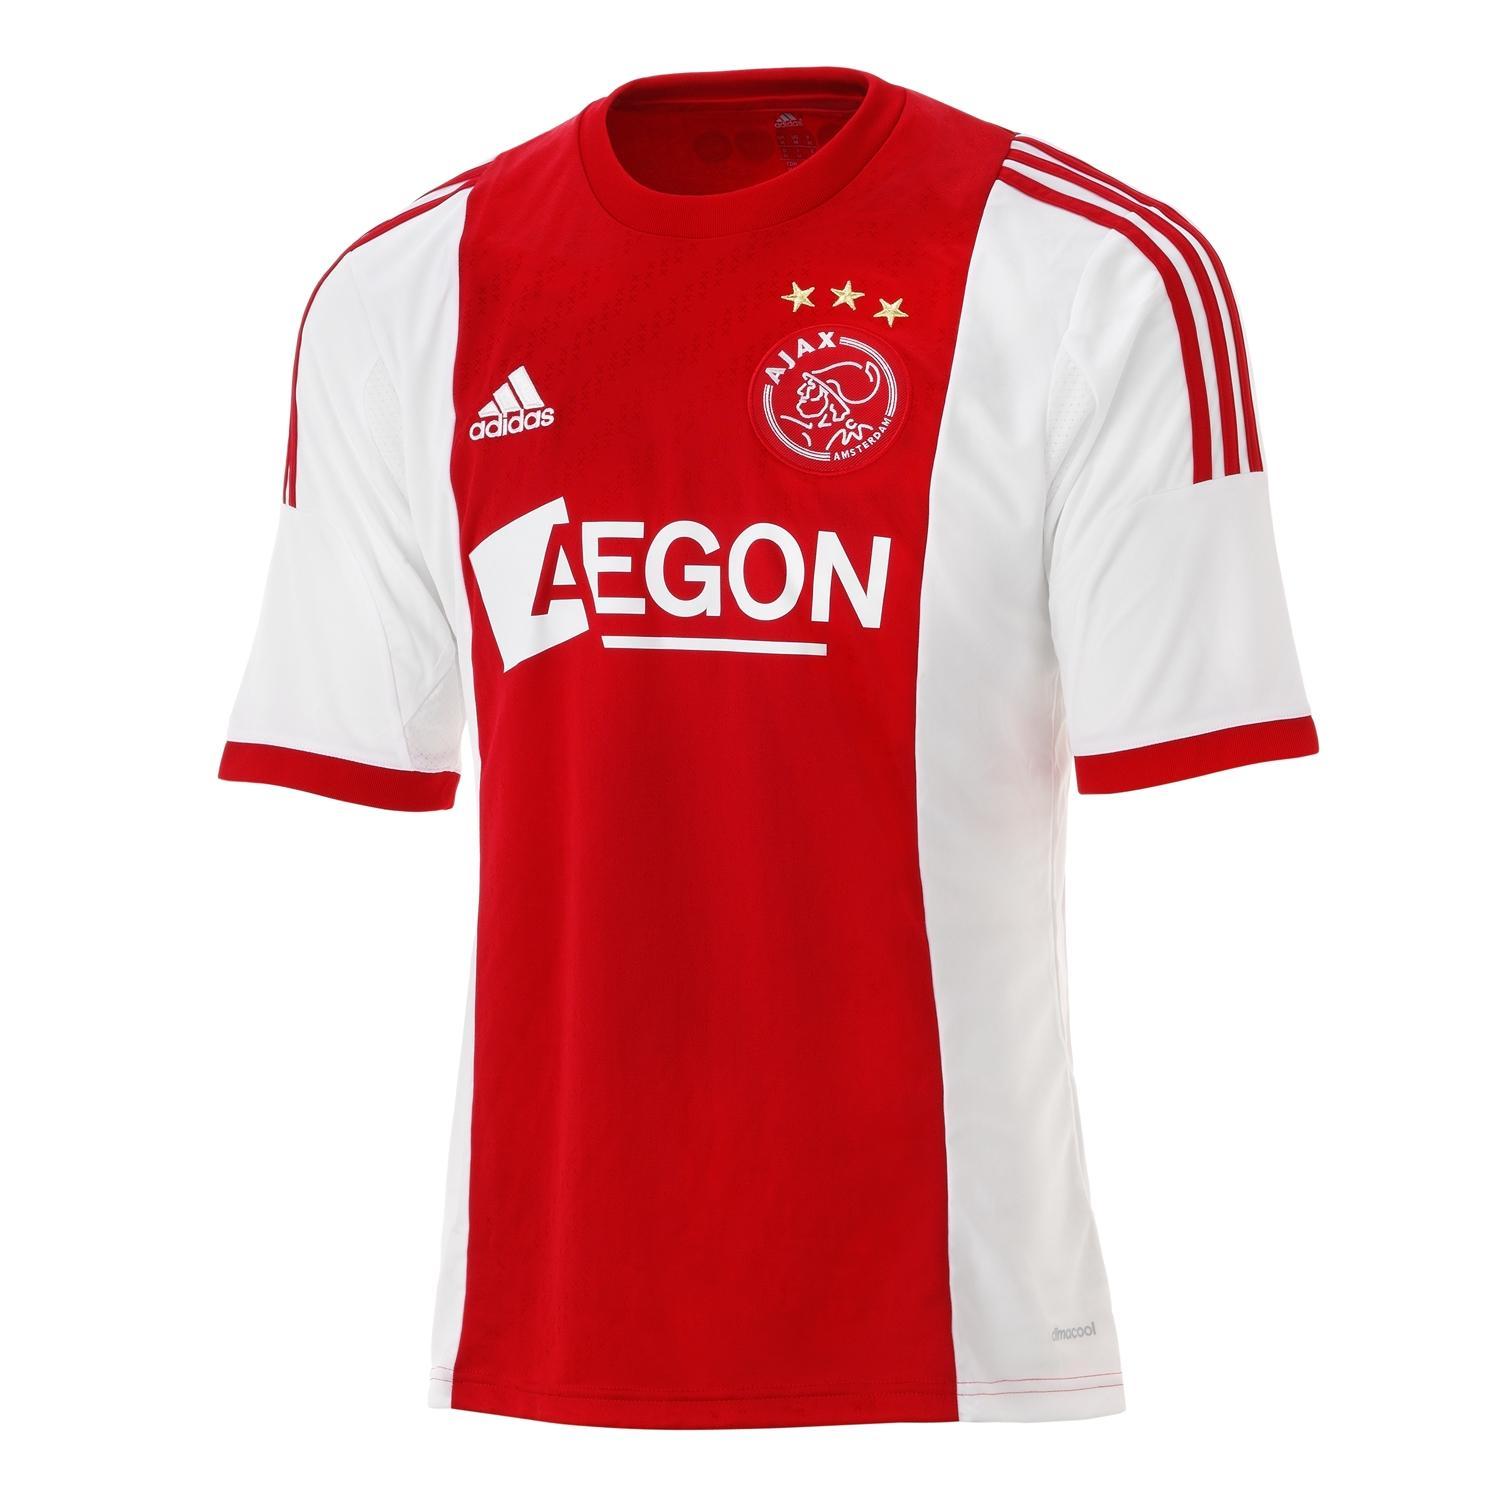 Foto 2013-14 Ajax Adidas Home Football Shirt foto 900133